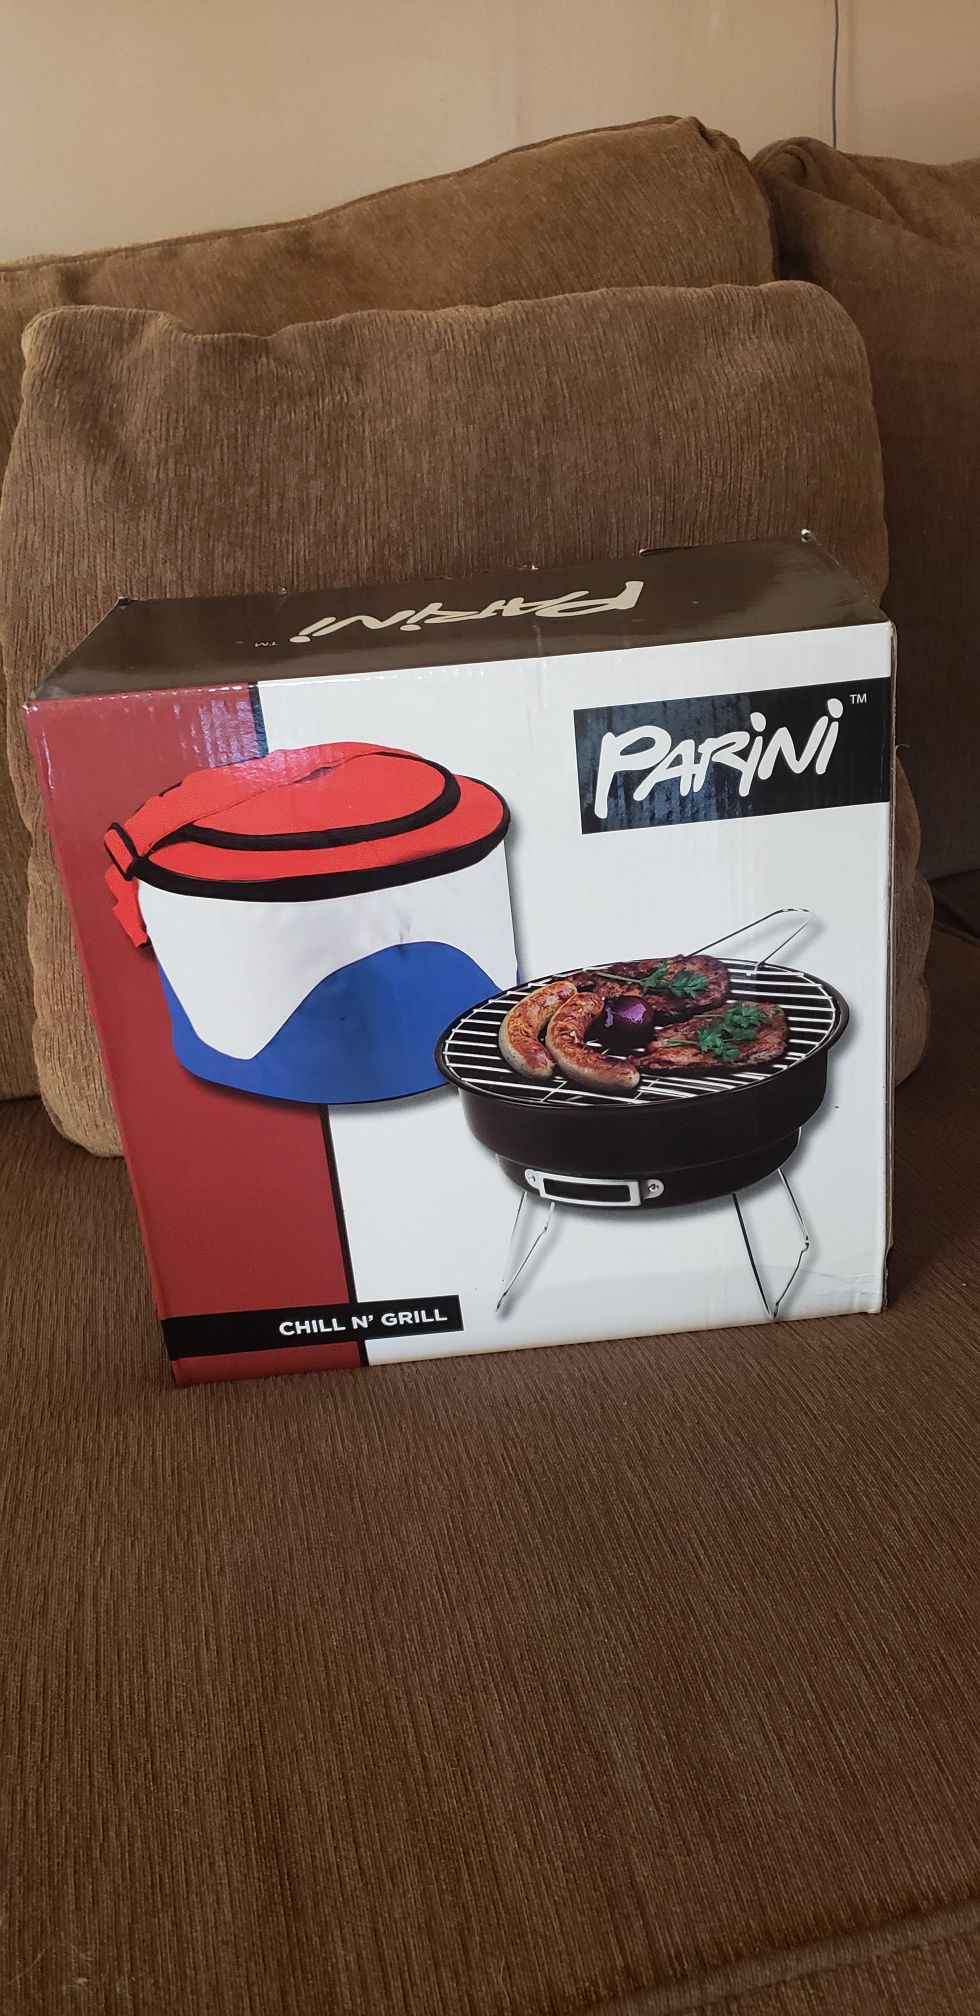 Parini Portable BBQ Grill